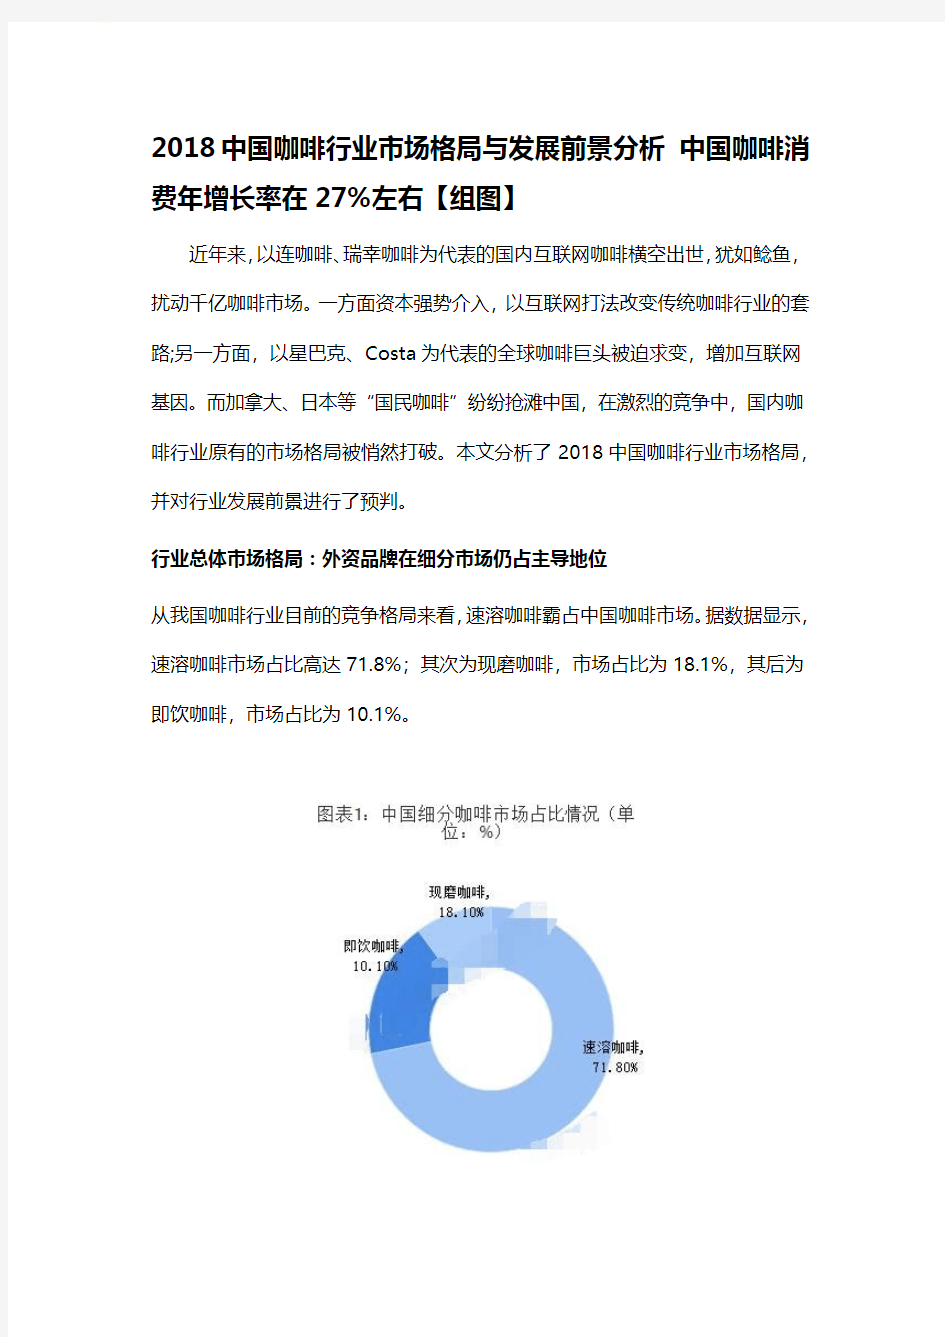 2018-2019年中国咖啡行业分析报告